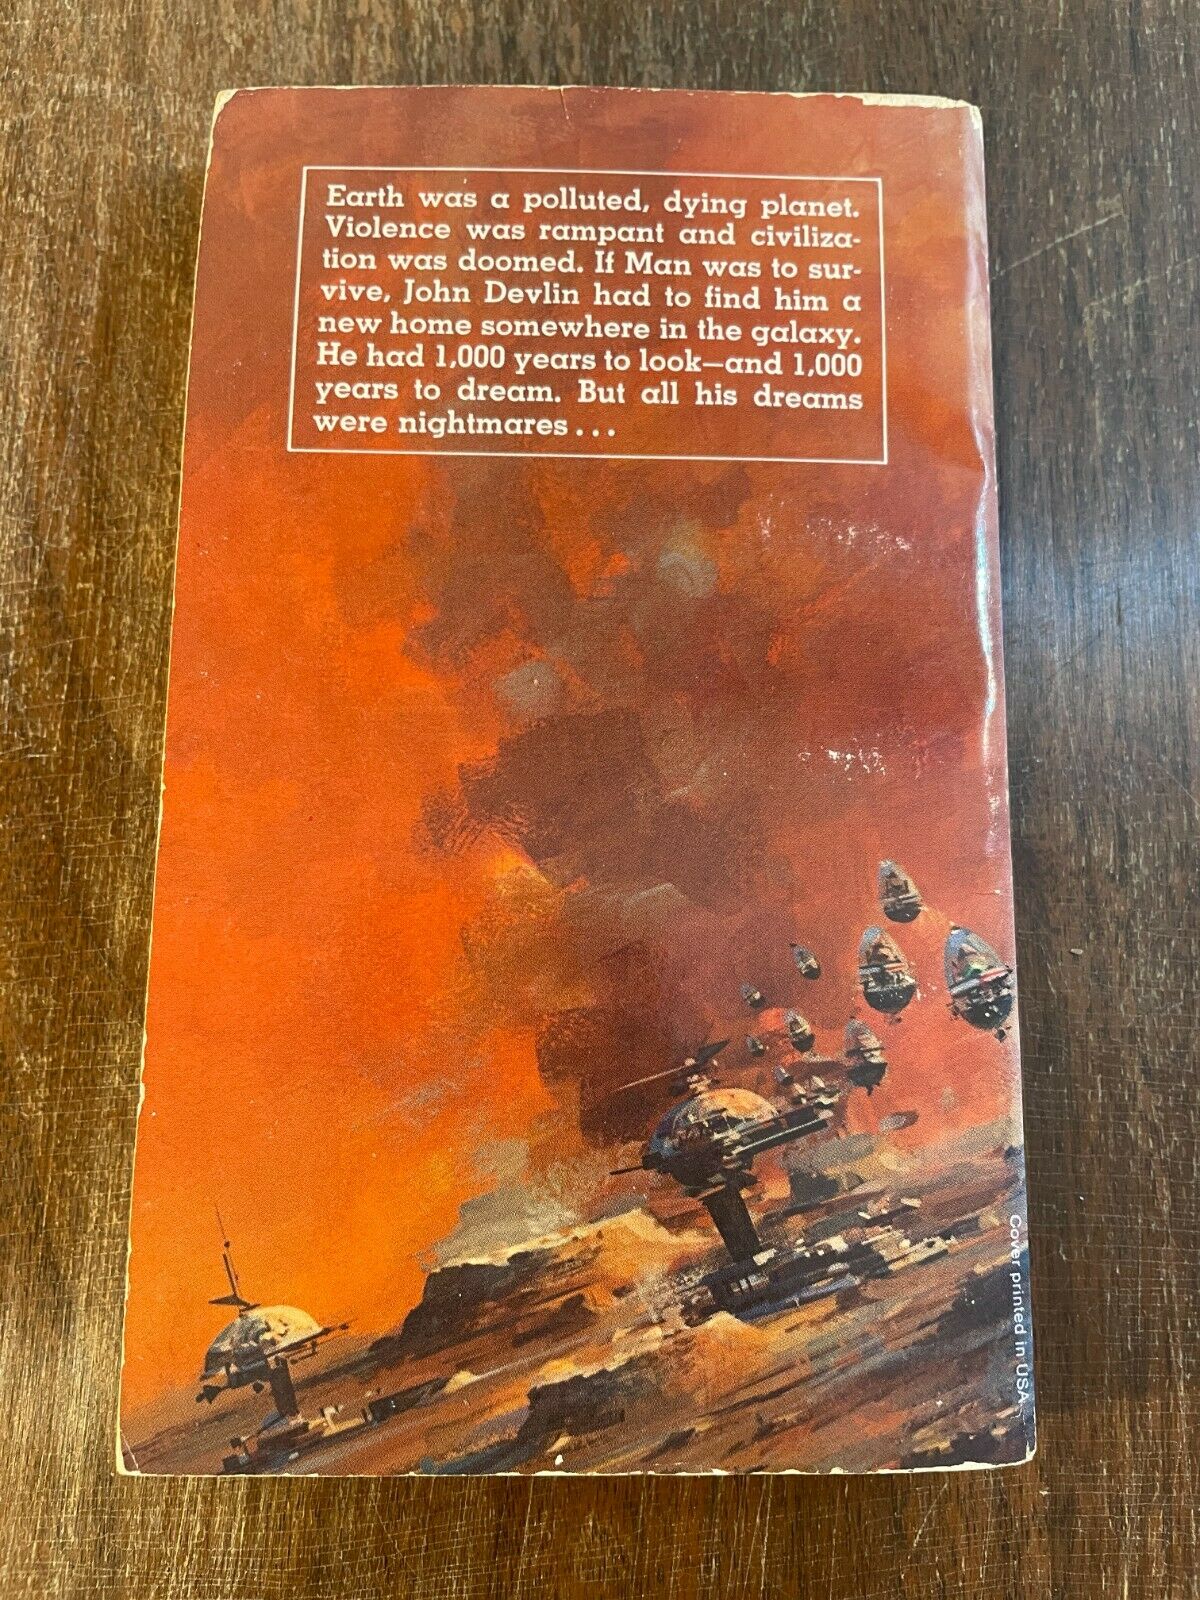 The Dream Millennium James White Paperback 1974 1st Print Vintage Sci Fi (Q1)